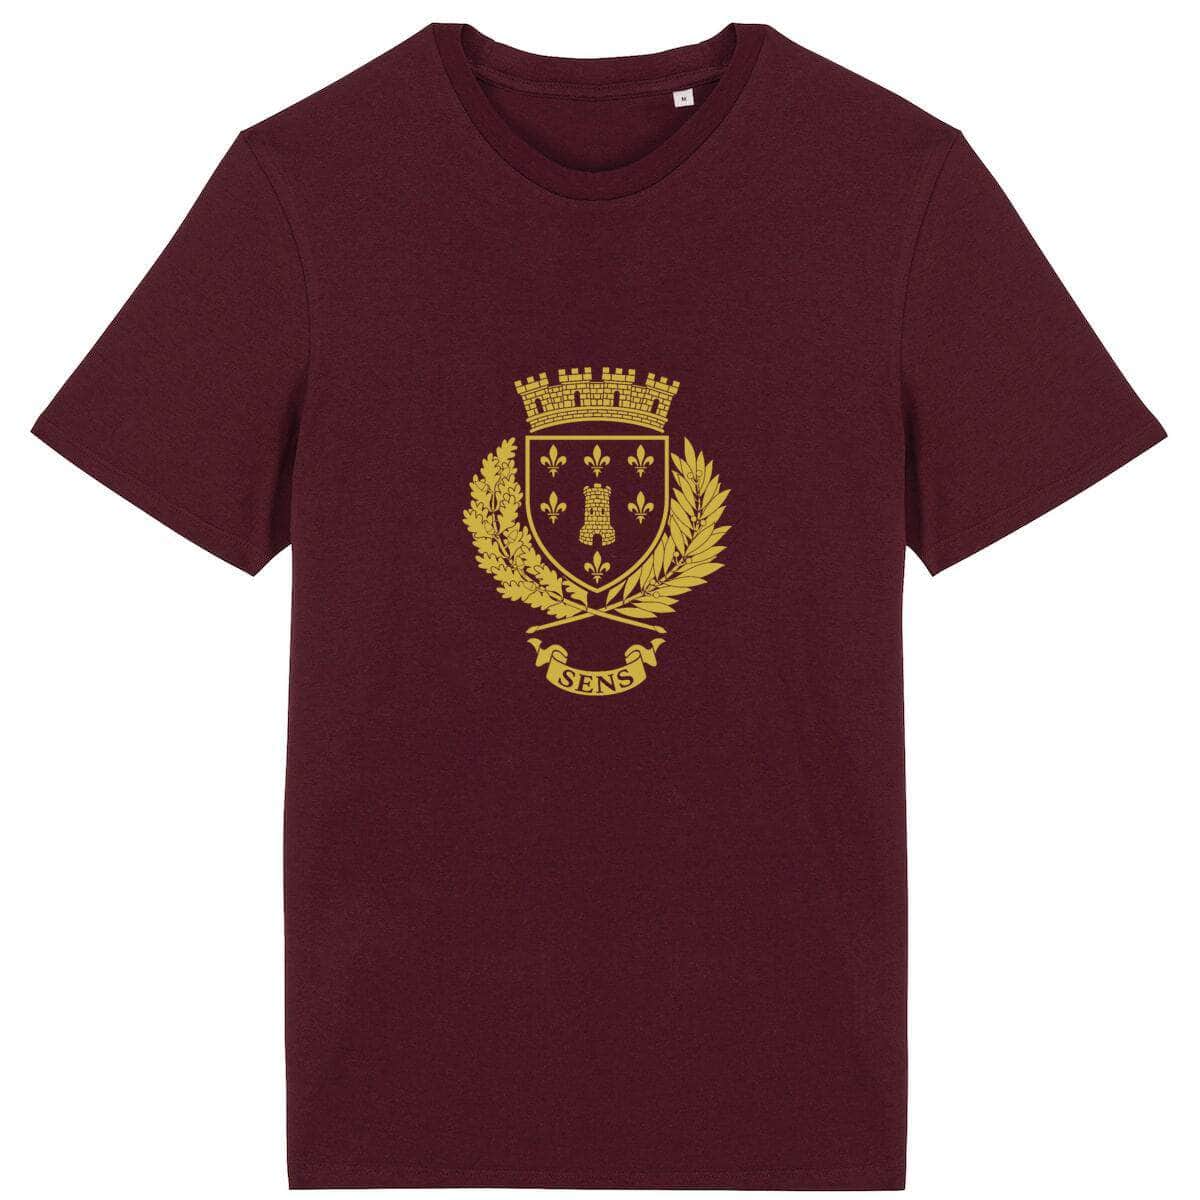 T-shirt - Armoiries de Sens Bordeaux / XS